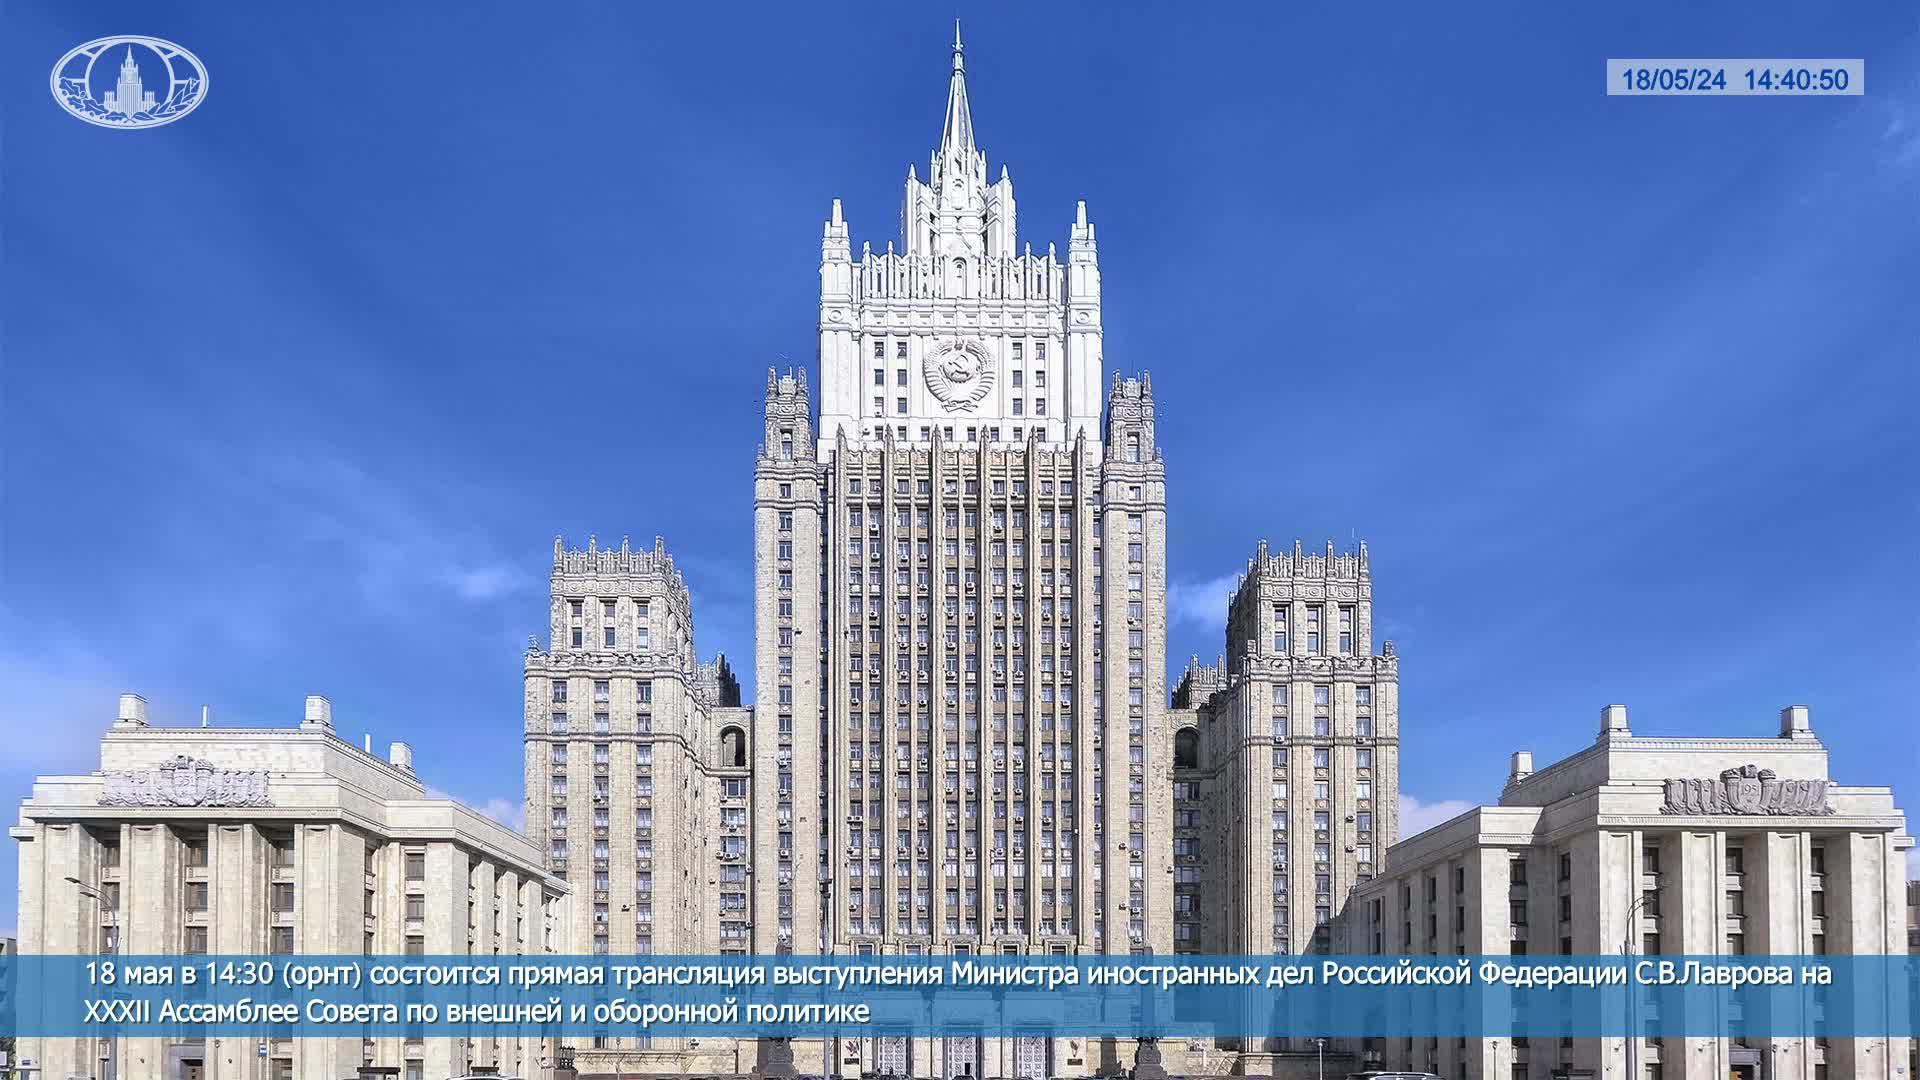 🔴 #ПрямойЭфир: Выступление С.В.Лаврова на XXXII Ассамблее Совета по внешней и оборонной политике